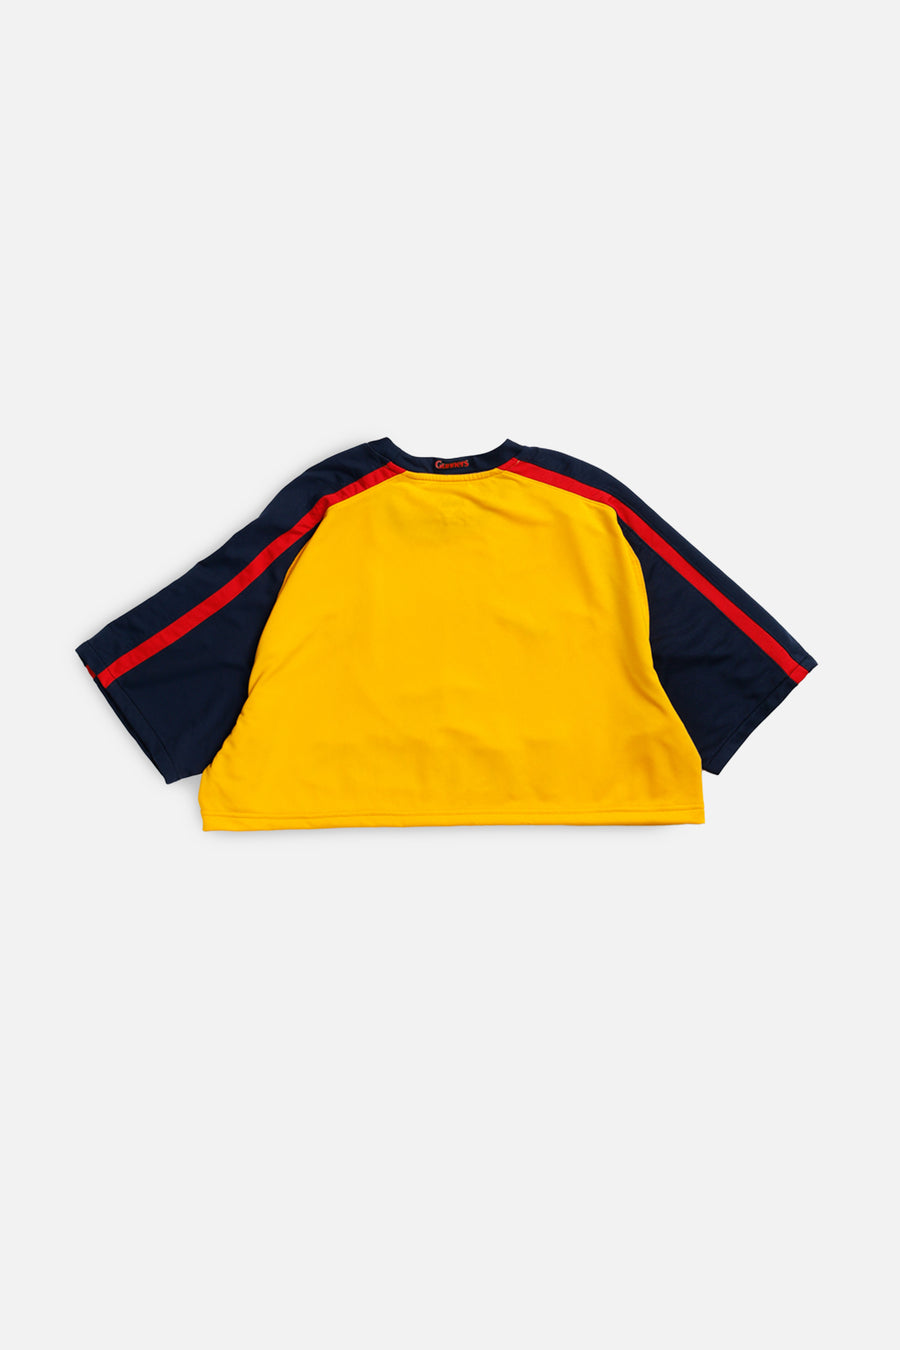 Rework Crop Arsenal Soccer Jersey - XL